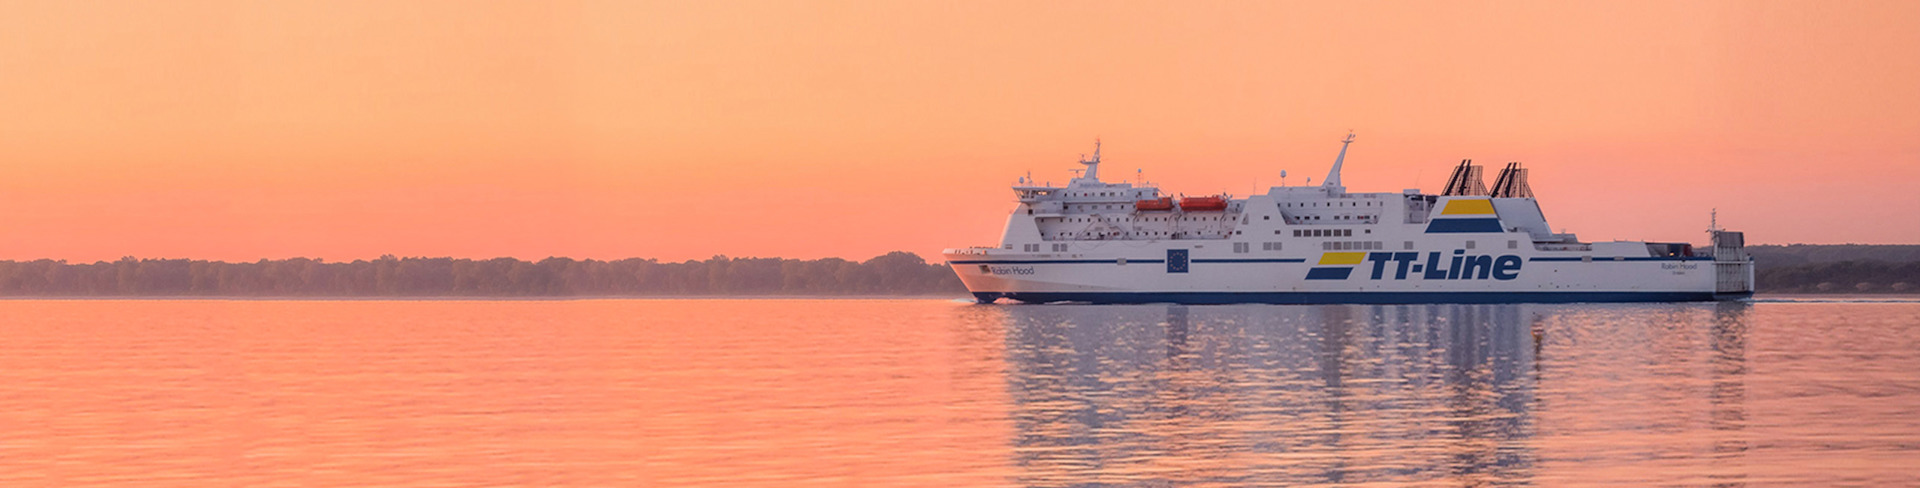 Dienstregeling-Rostock-Klaipėda-TT-Line-ferry-Peter-Pan-at-sea